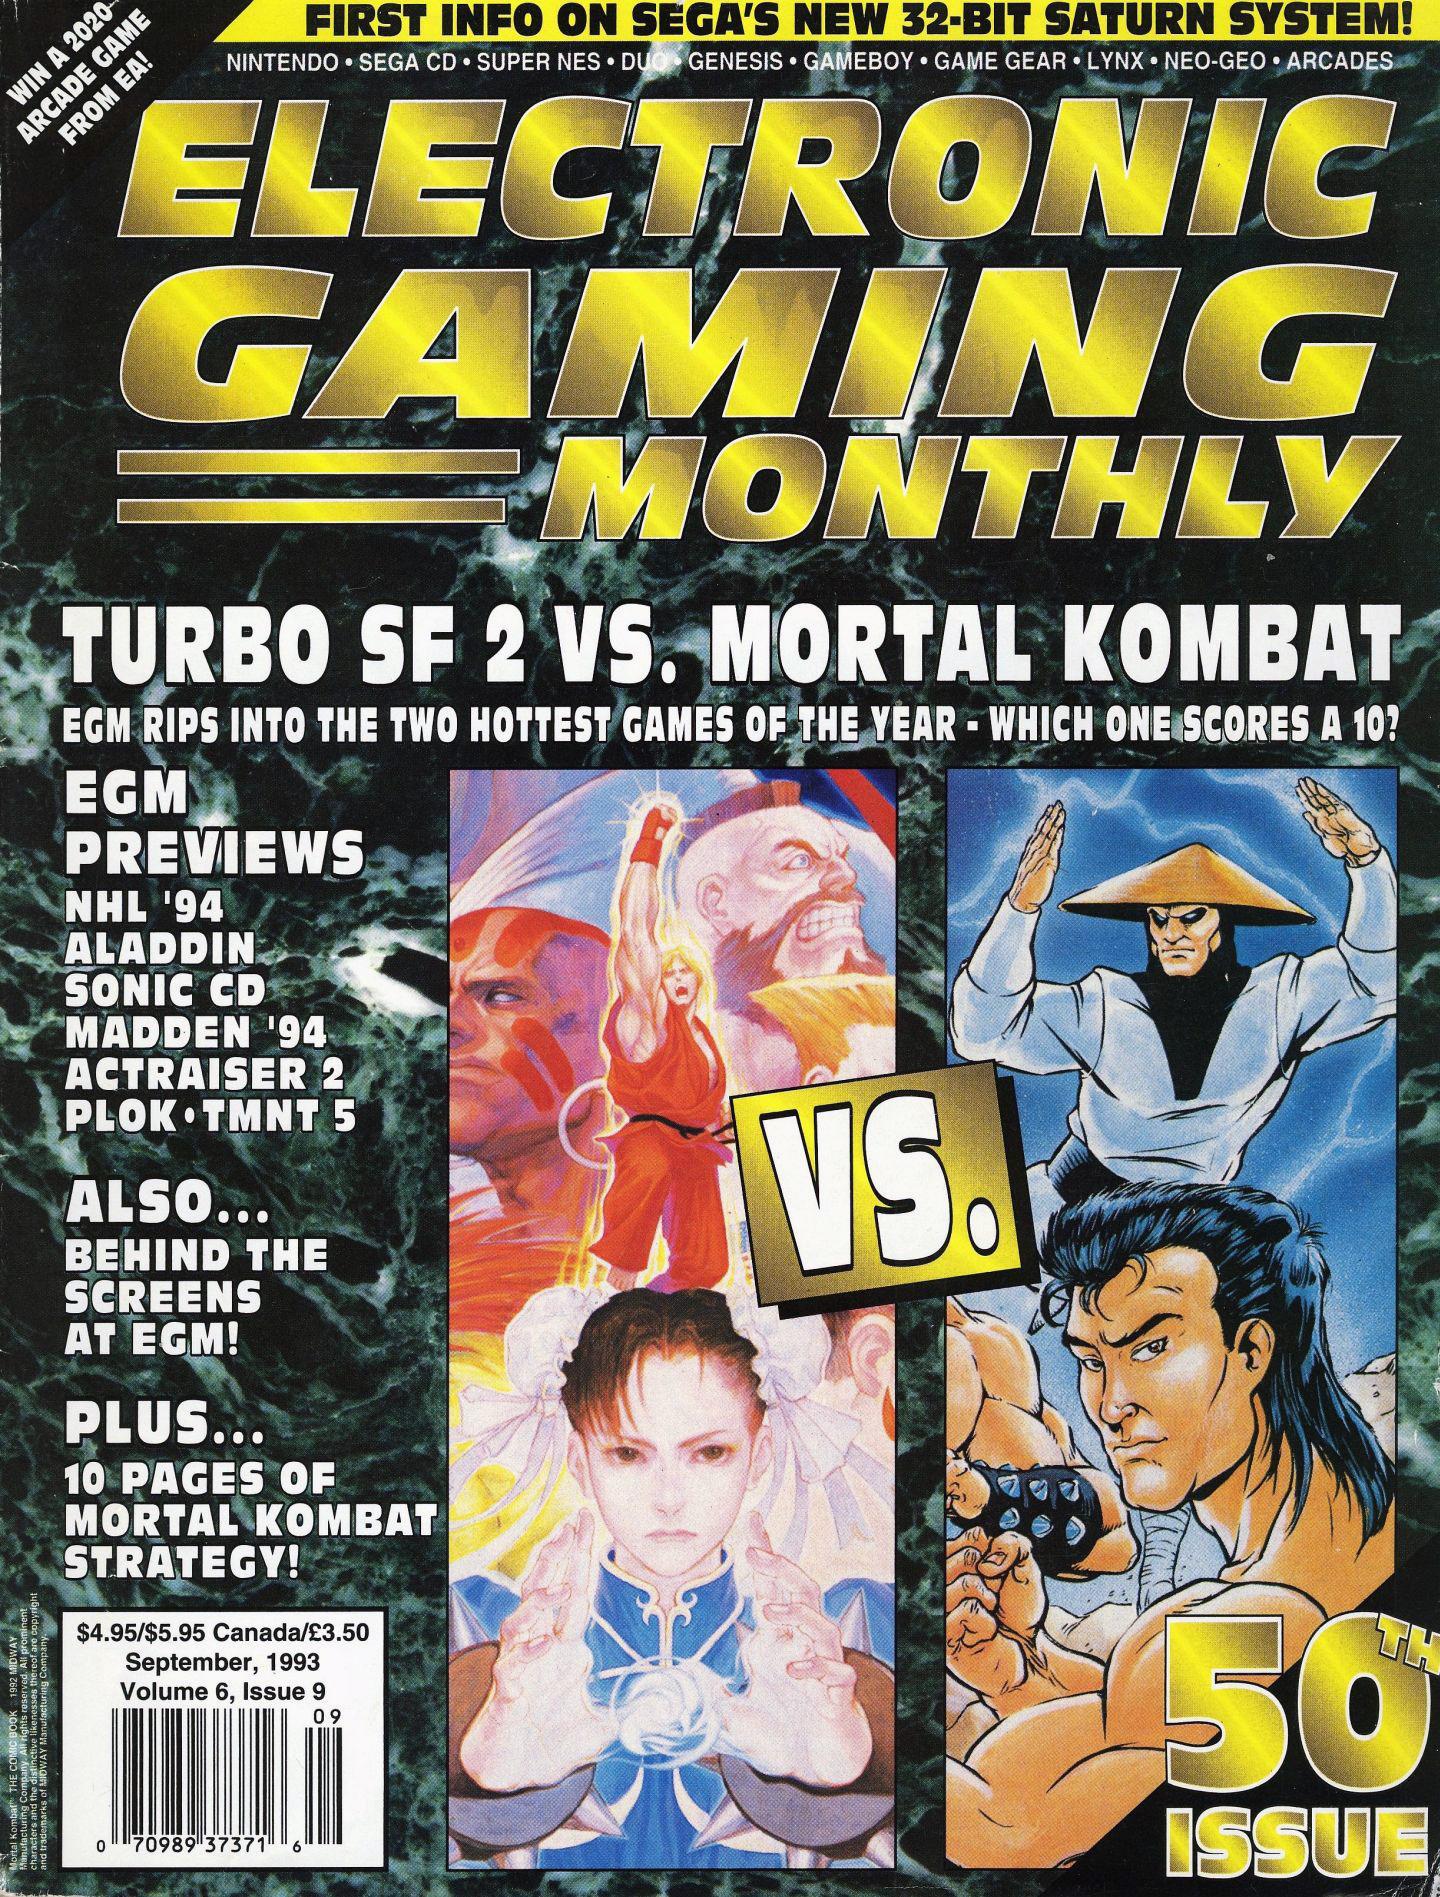 Street fighter vs Mortal Kombat